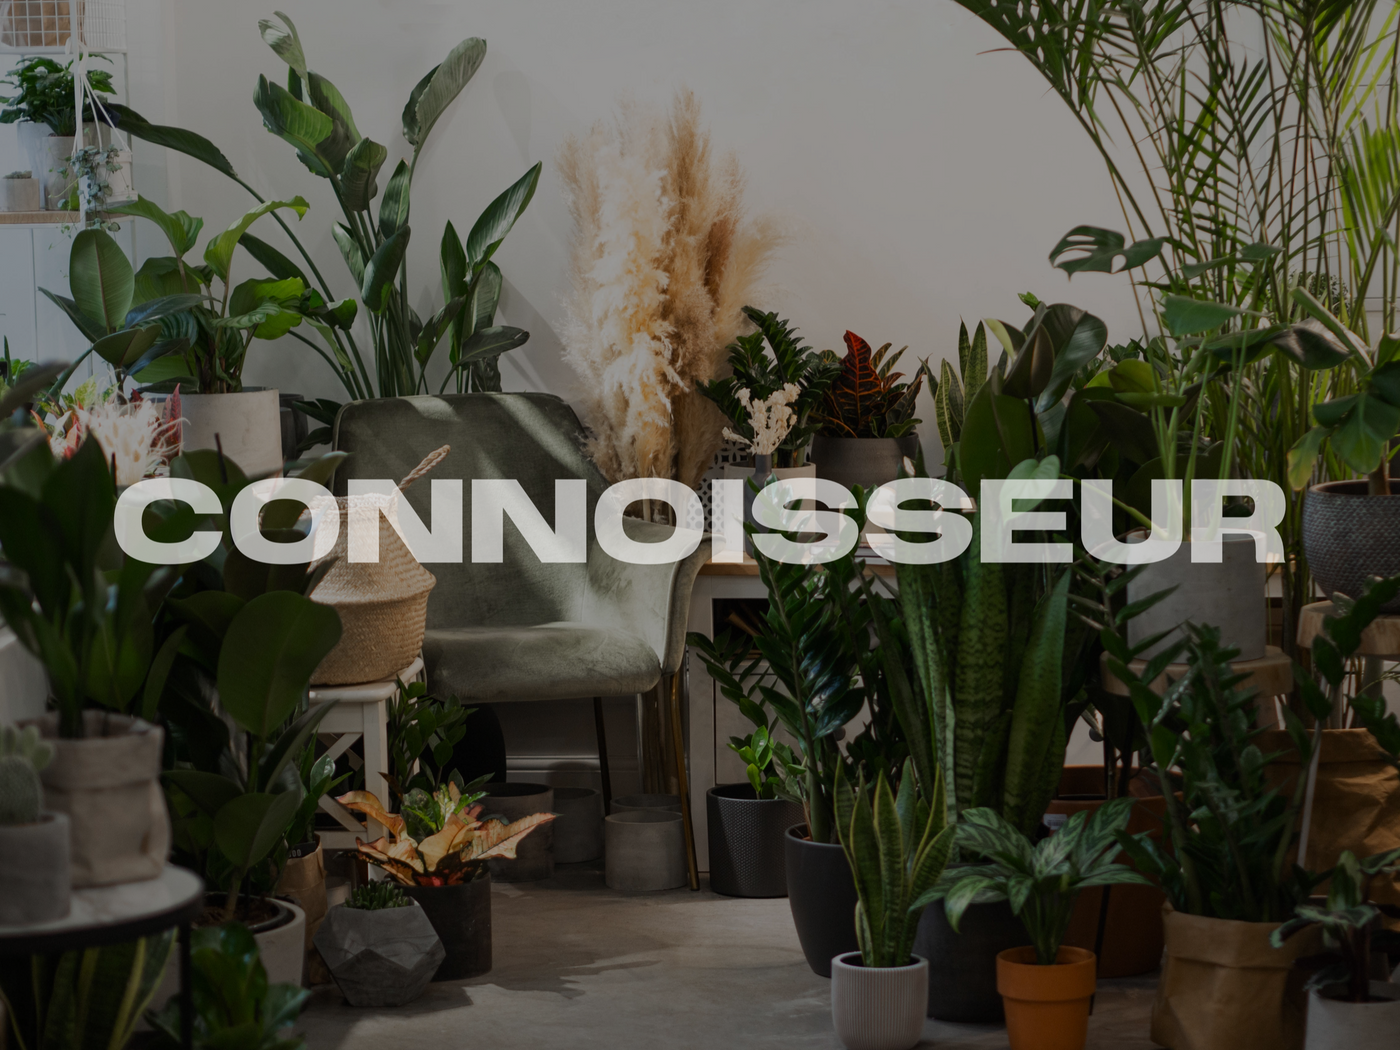 The Plant Connoisseur